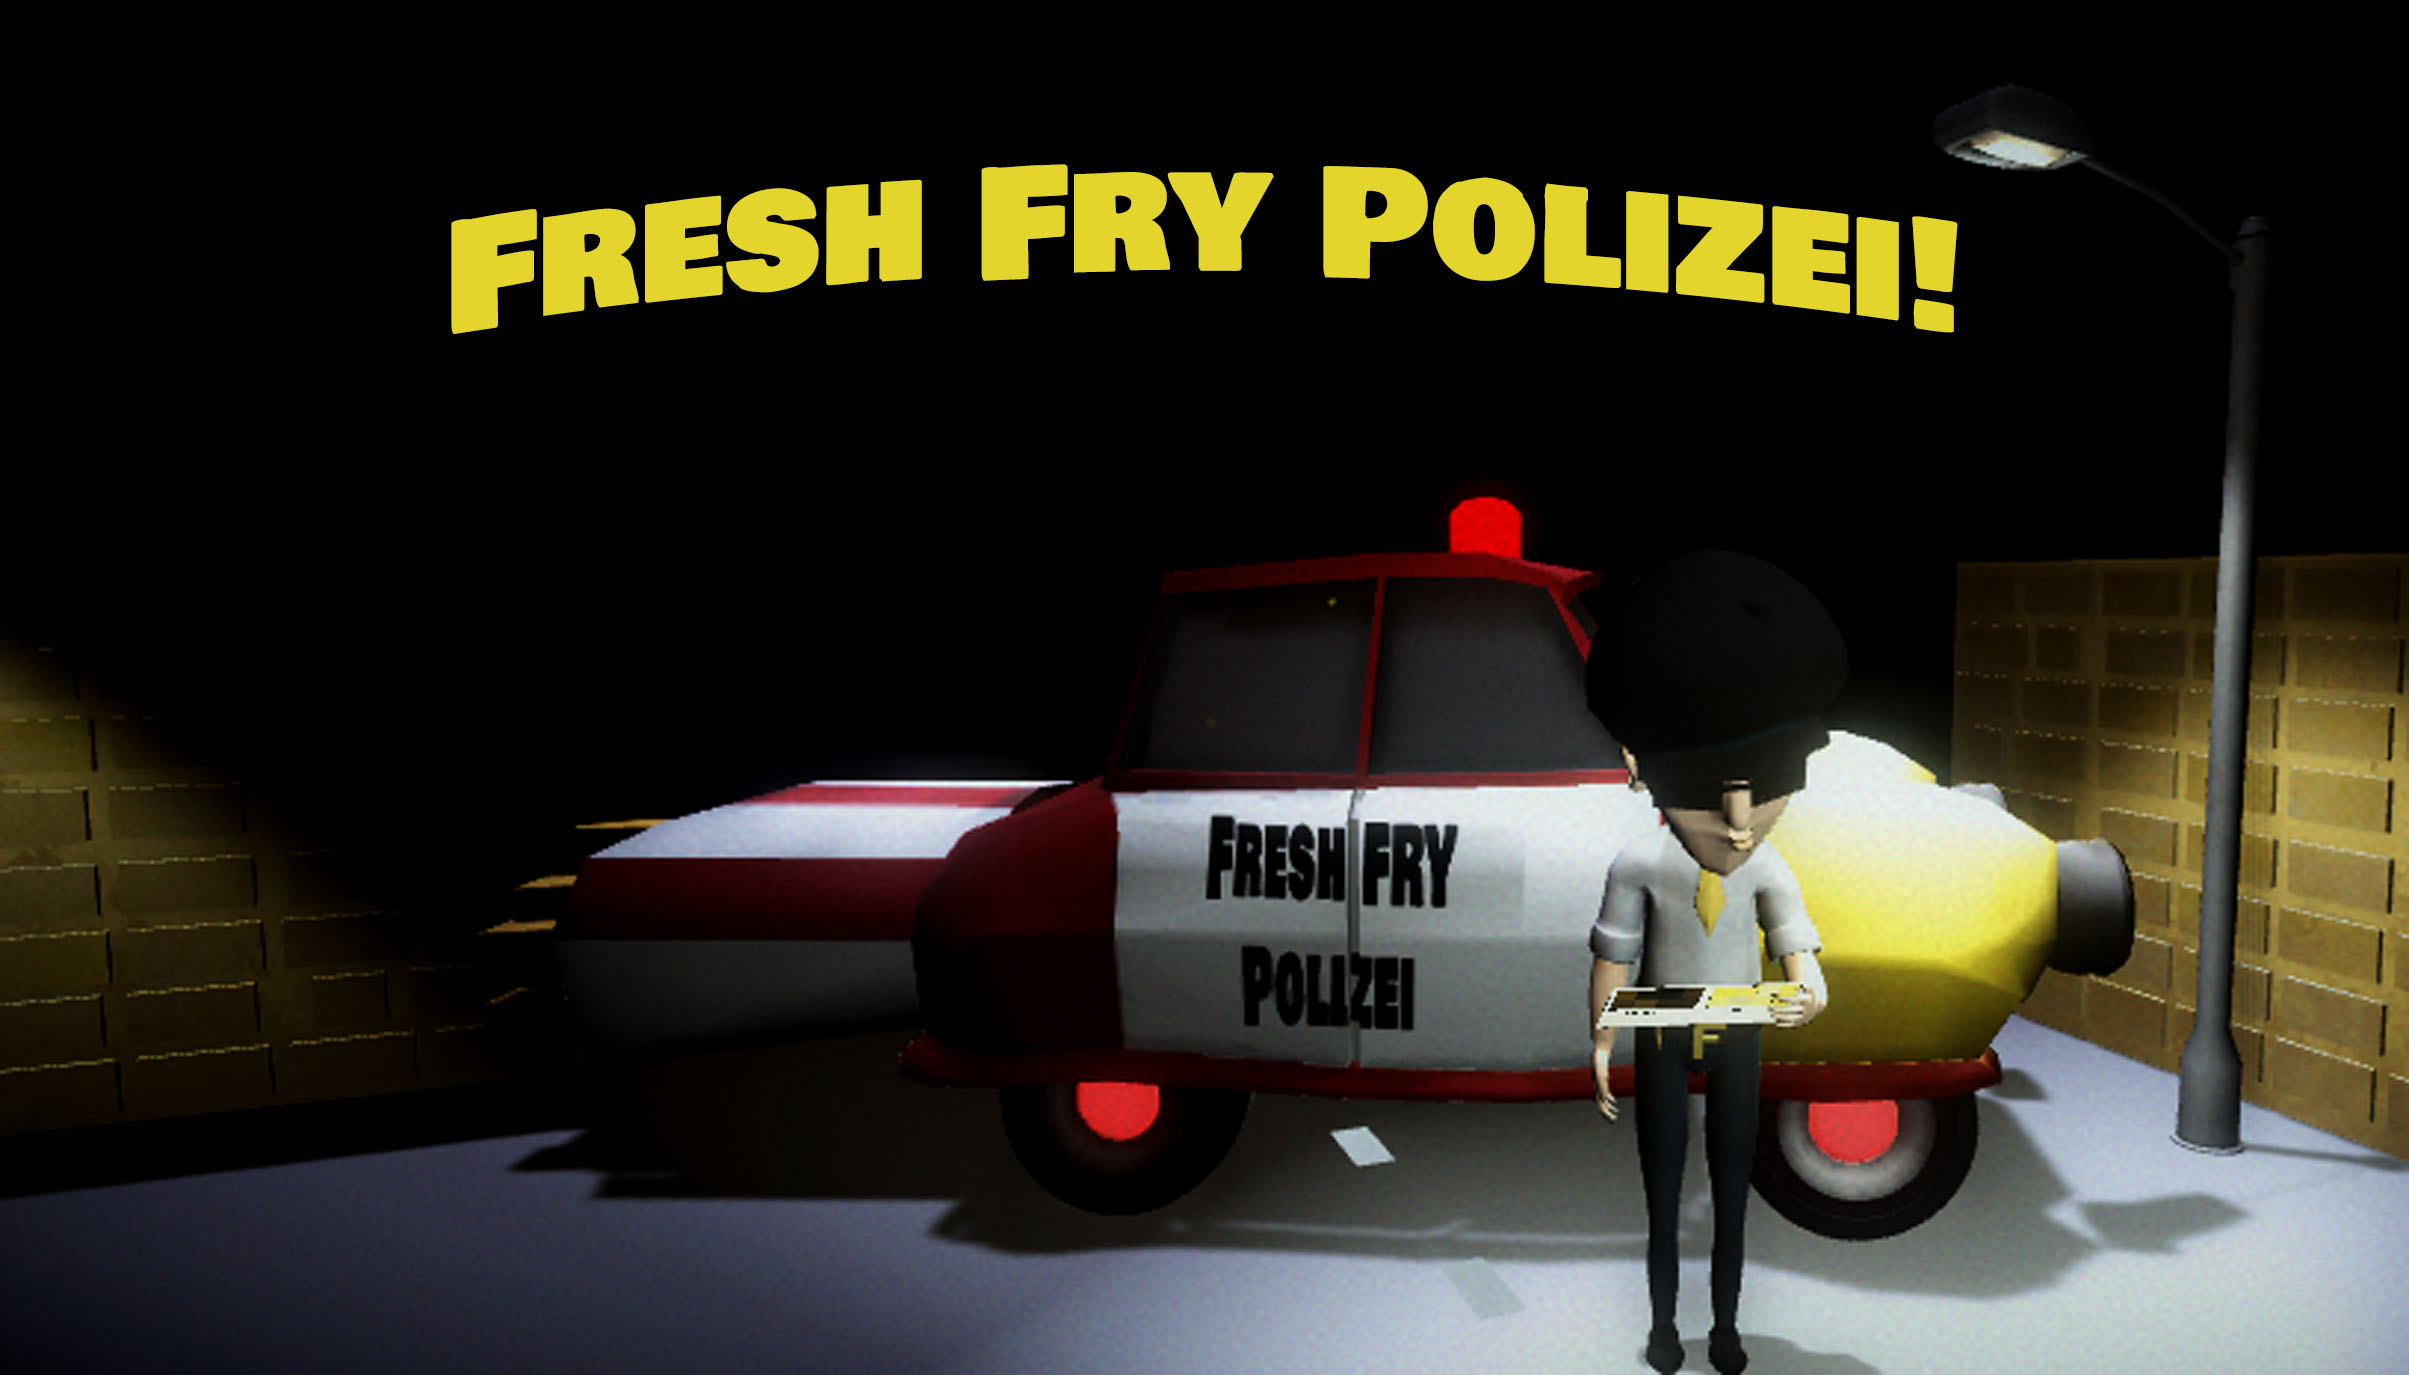 Fresh Fry Polizei!